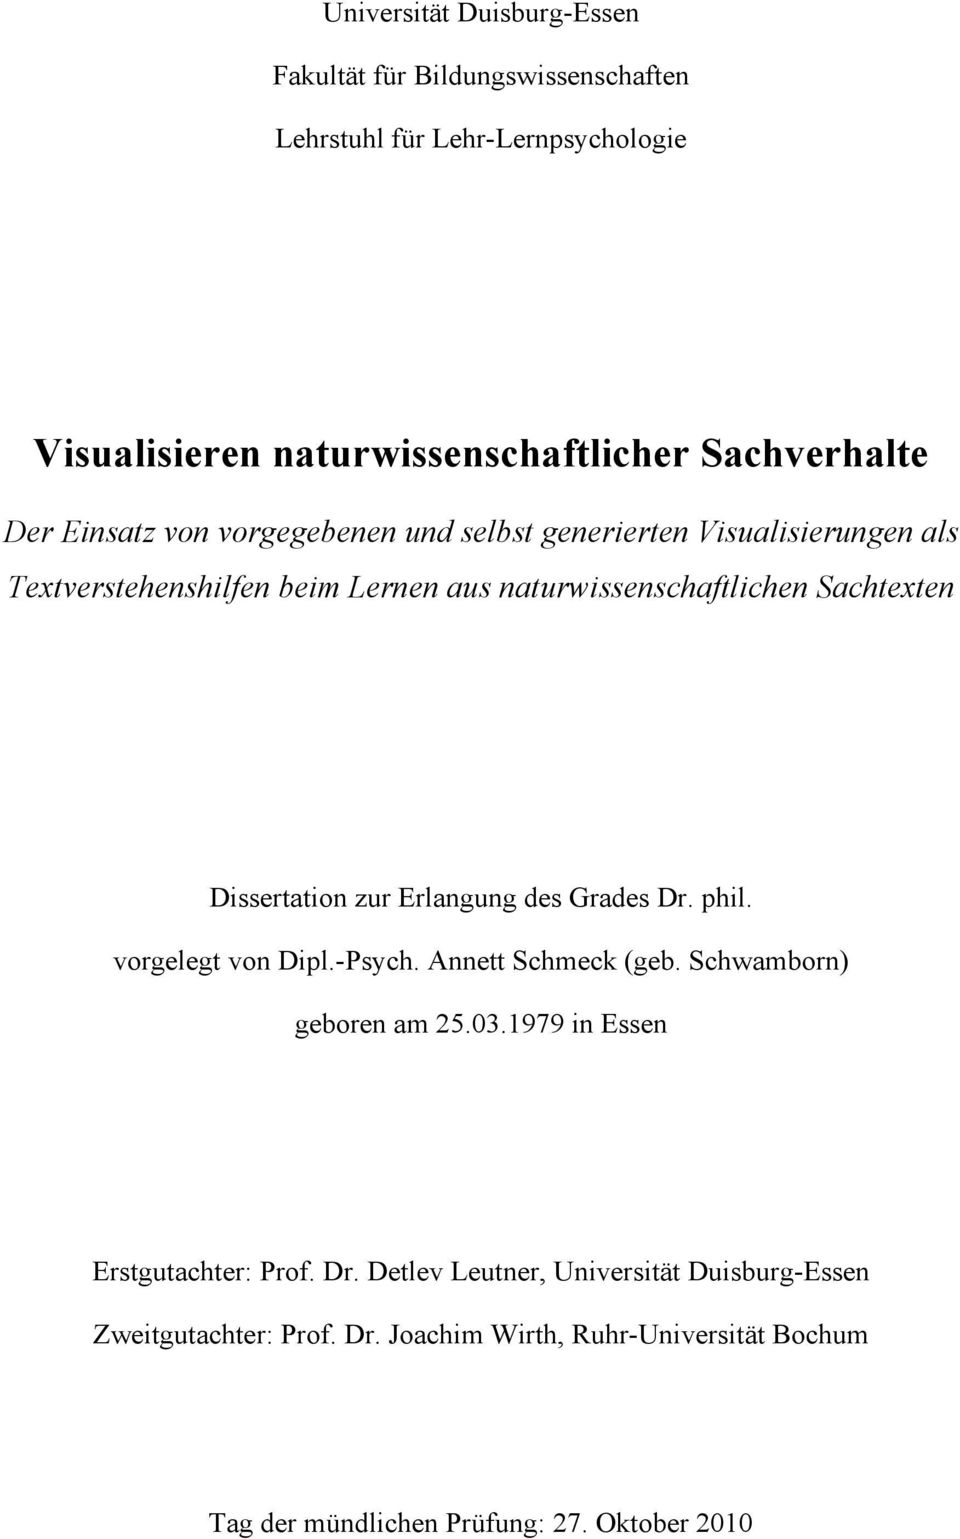 Dissertation zur Erlangung des Grades Dr. phil. vorgelegt von Dipl.-Psych. Annett Schmeck (geb. Schwamborn) geboren am 25.03.